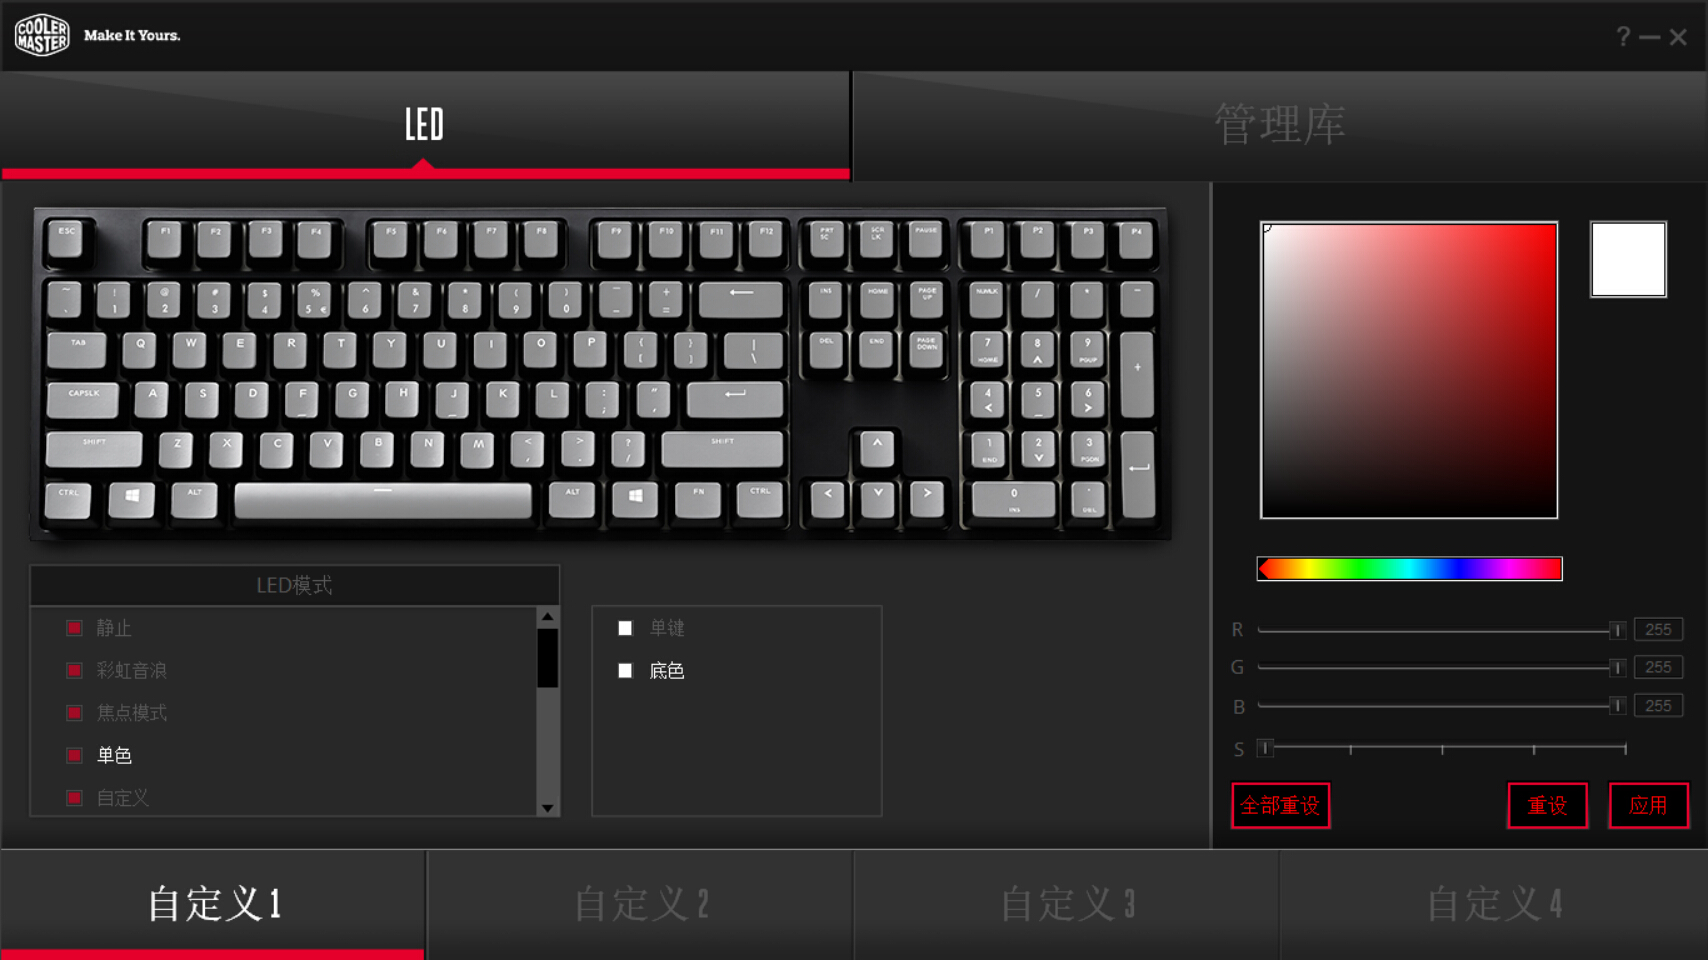 海外品牌RGB机械键盘驱动功能简介与特点分析